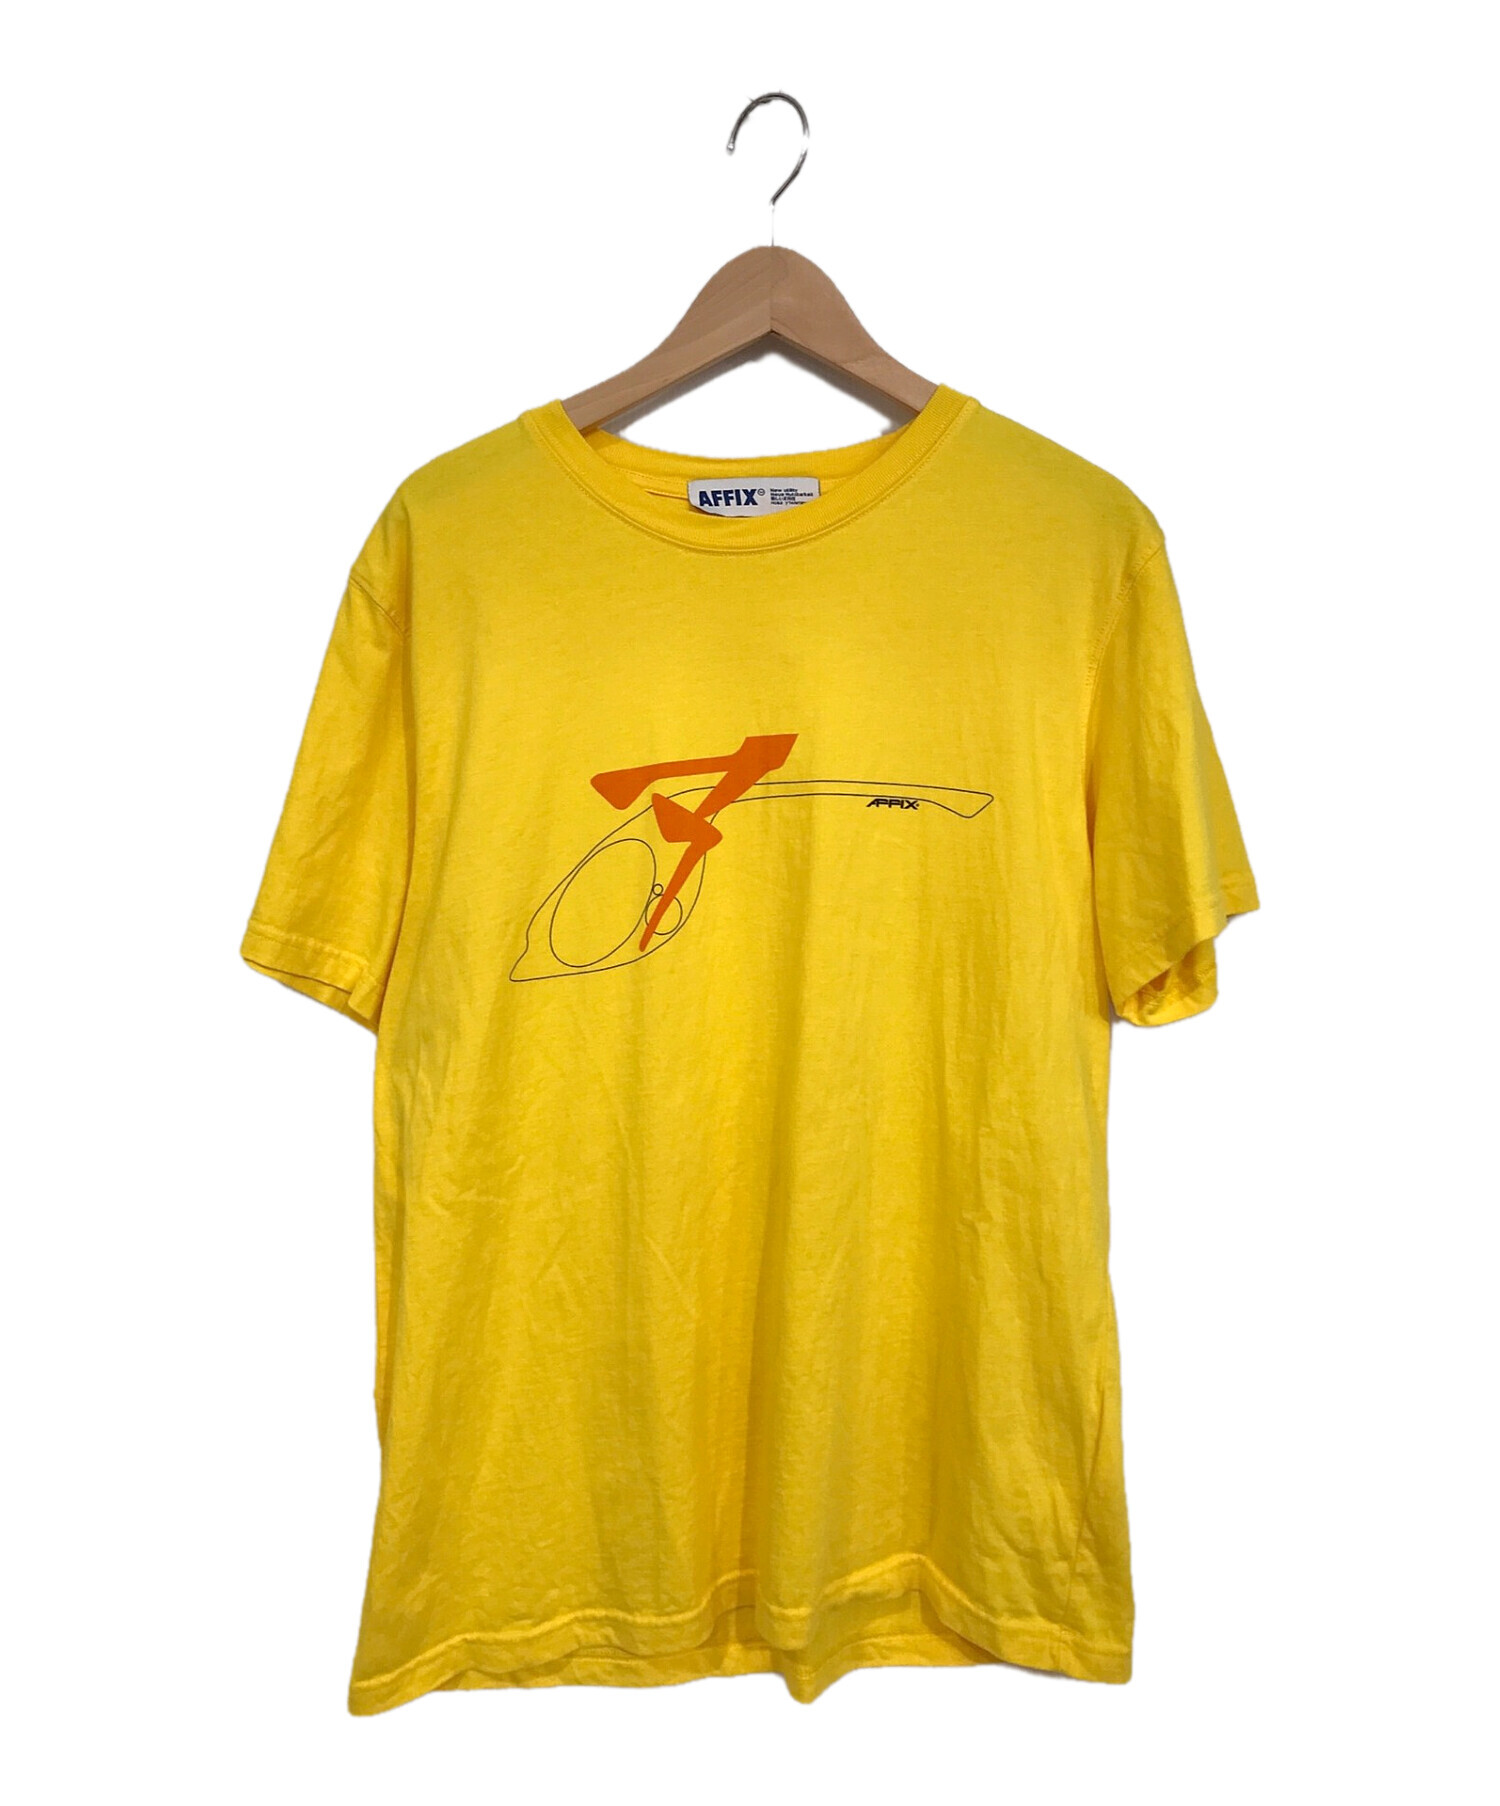 affix FW19 日本未発売 tシャツ - Tシャツ/カットソー(半袖/袖なし)